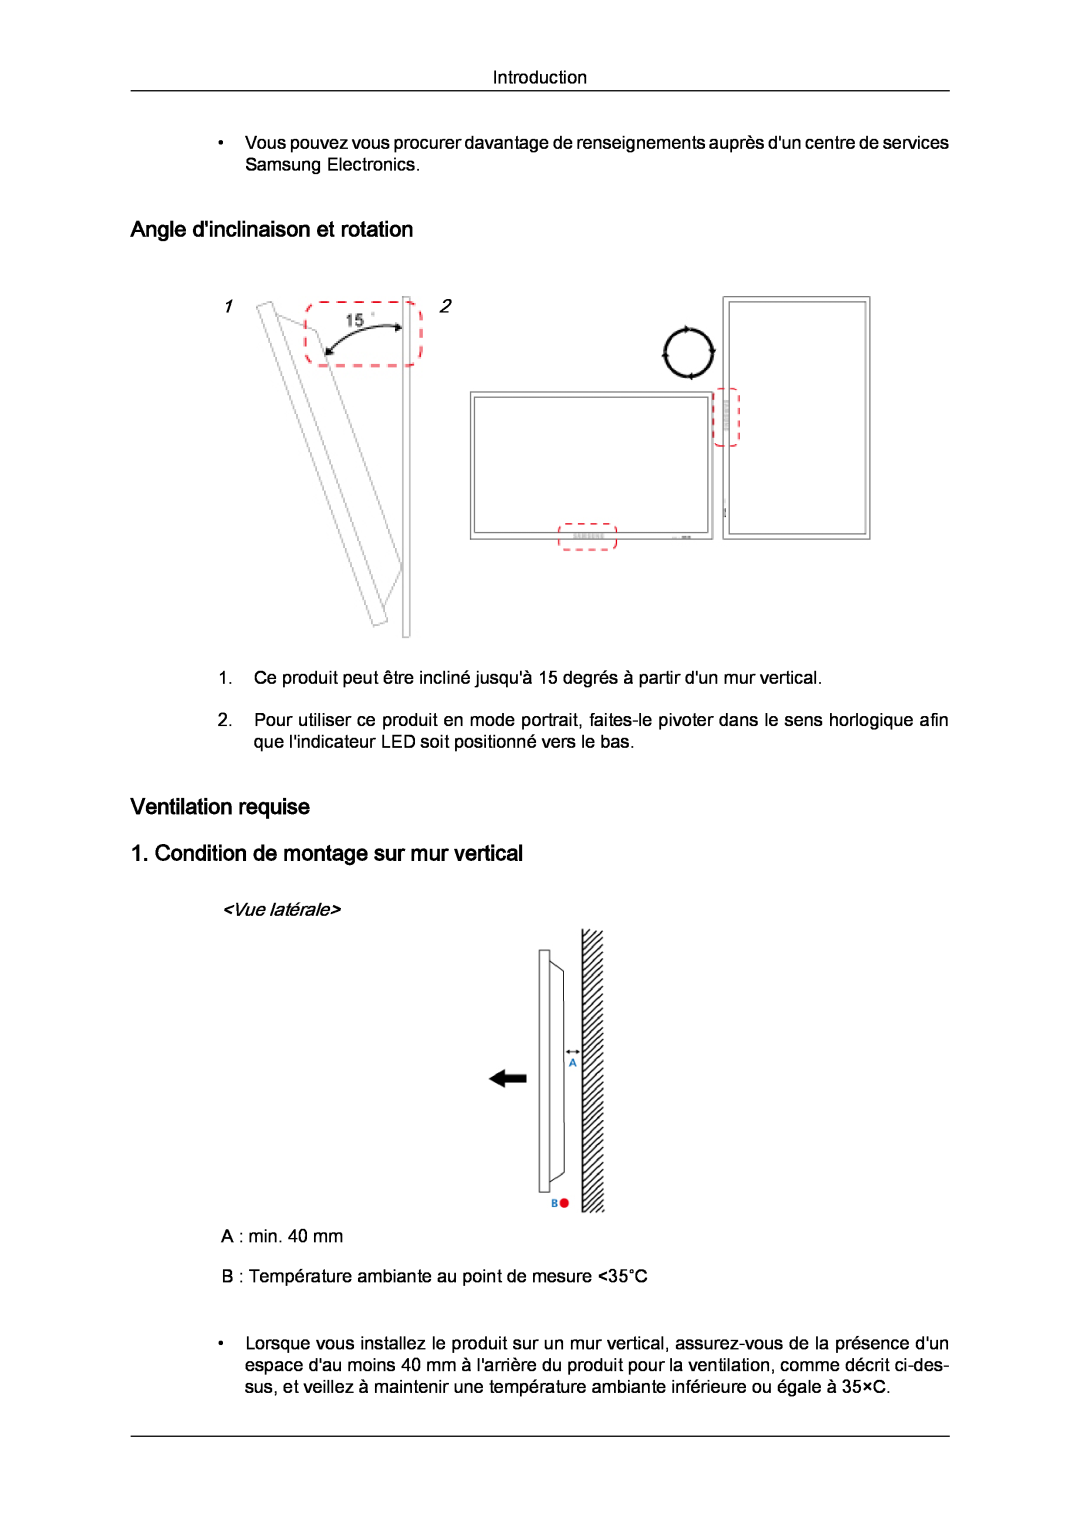 Samsung LH40CRPMBD/EN manual Angle dinclinaison et rotation, Ventilation requise 1. Condition de montage sur mur vertical 